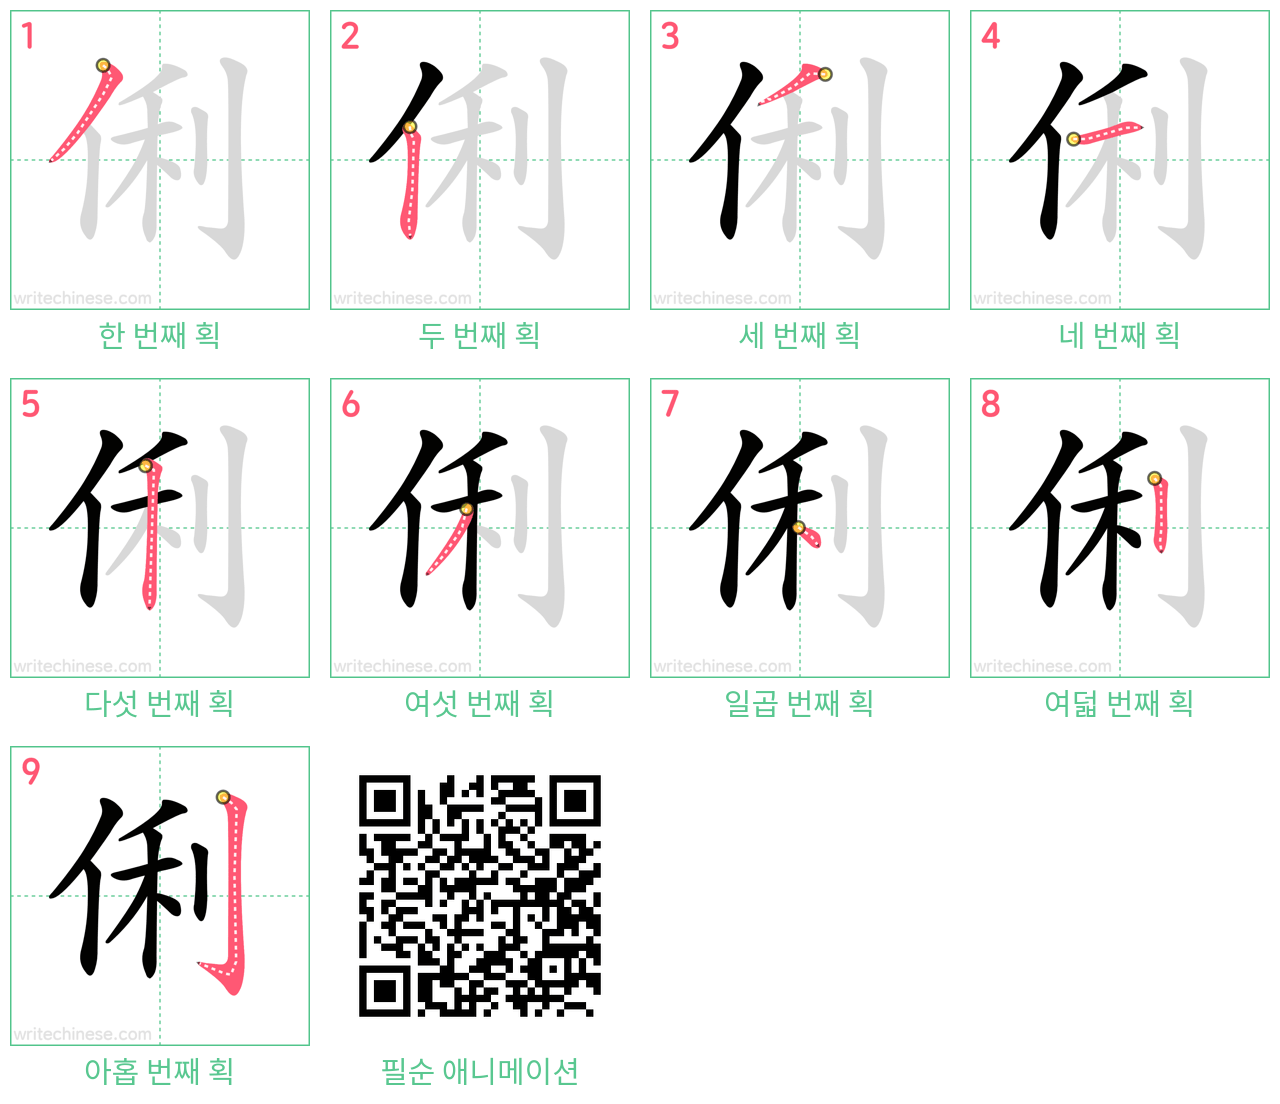 俐 step-by-step stroke order diagrams